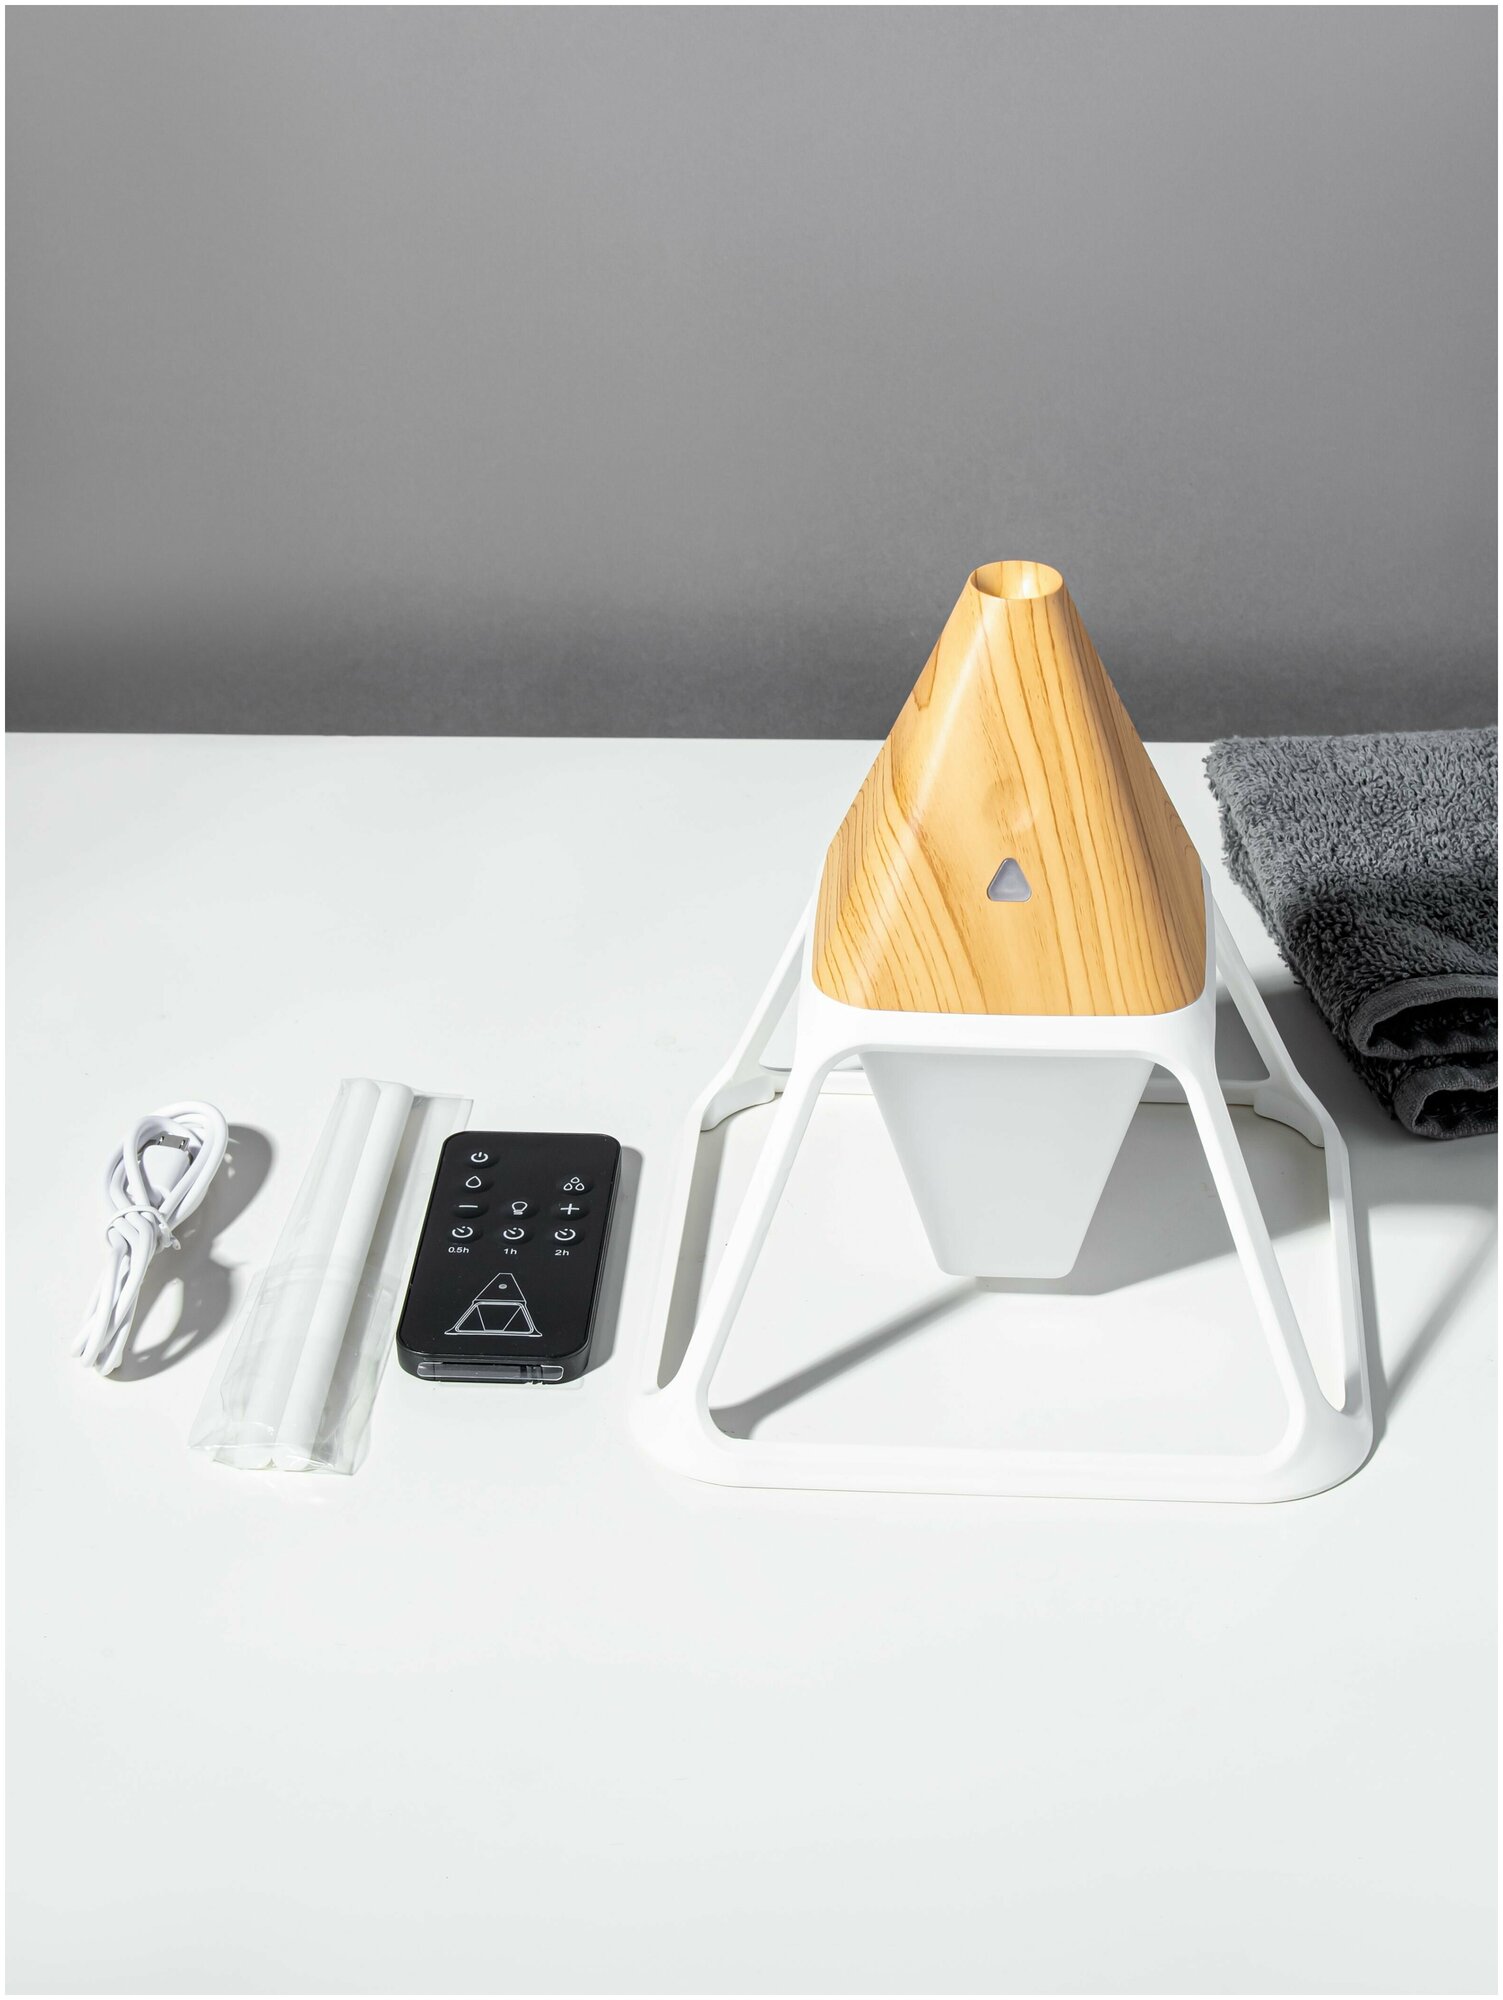 Декоративный настольный ночник-светильник с функцией увлажнения воздуха, прикроватный воздухоочиститель в спальню или детскую комнату - фотография № 8